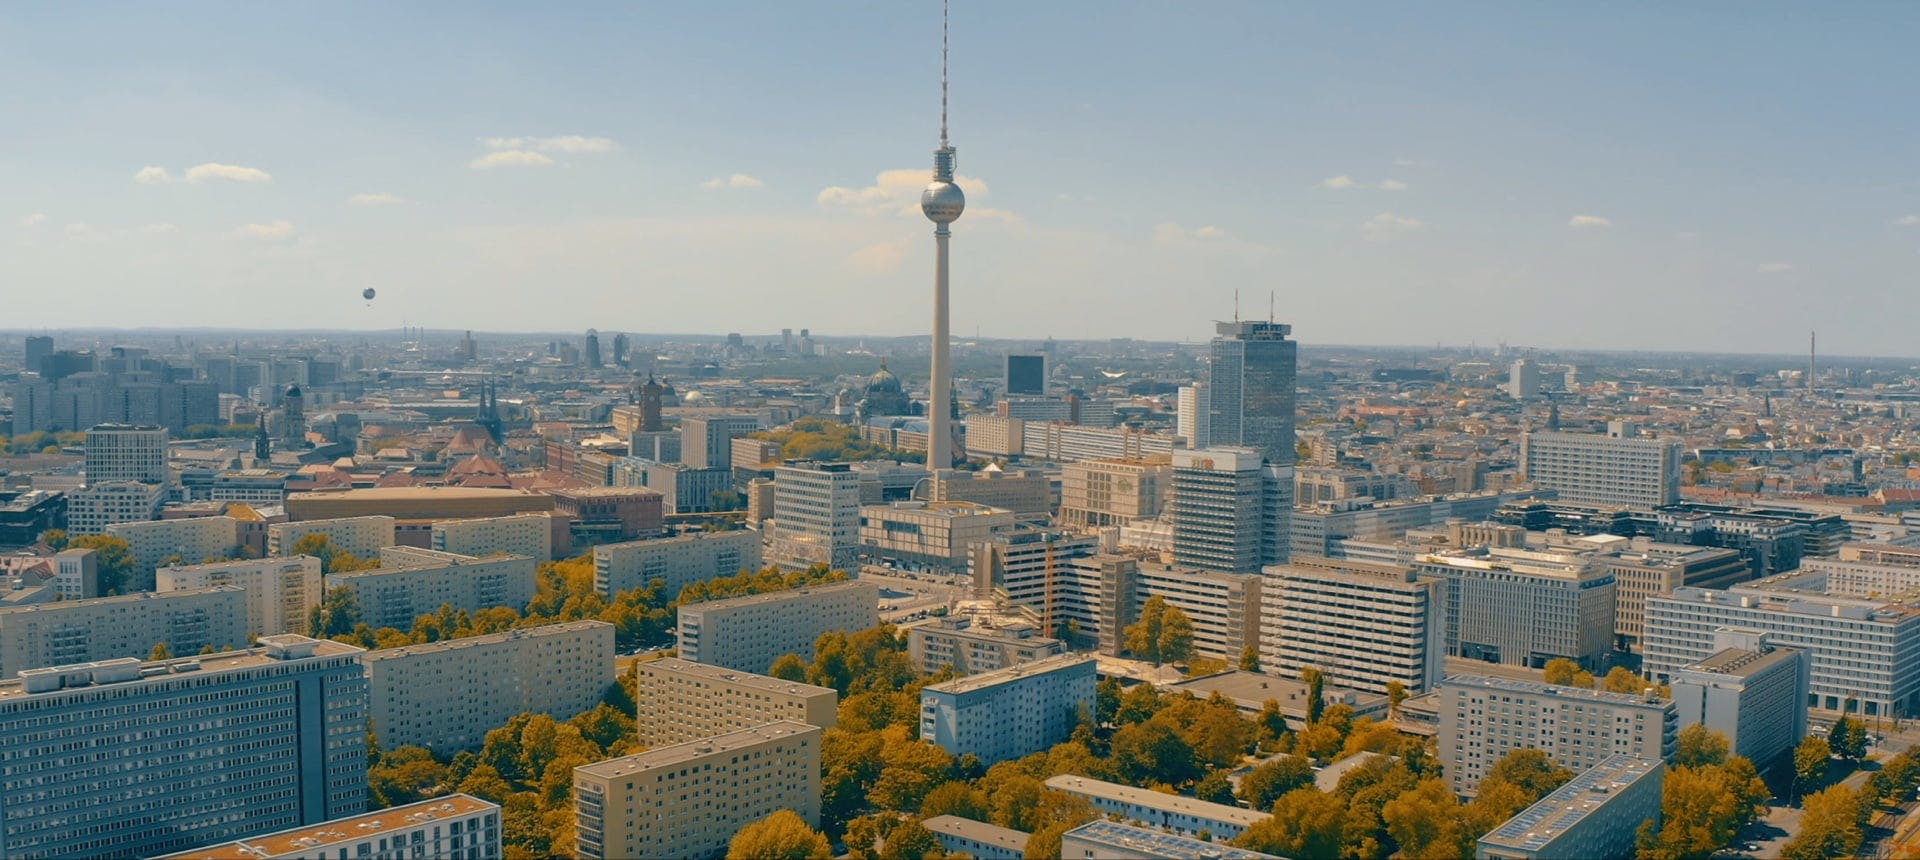 Berliner Fernsehturm aus der Vogelperspektive